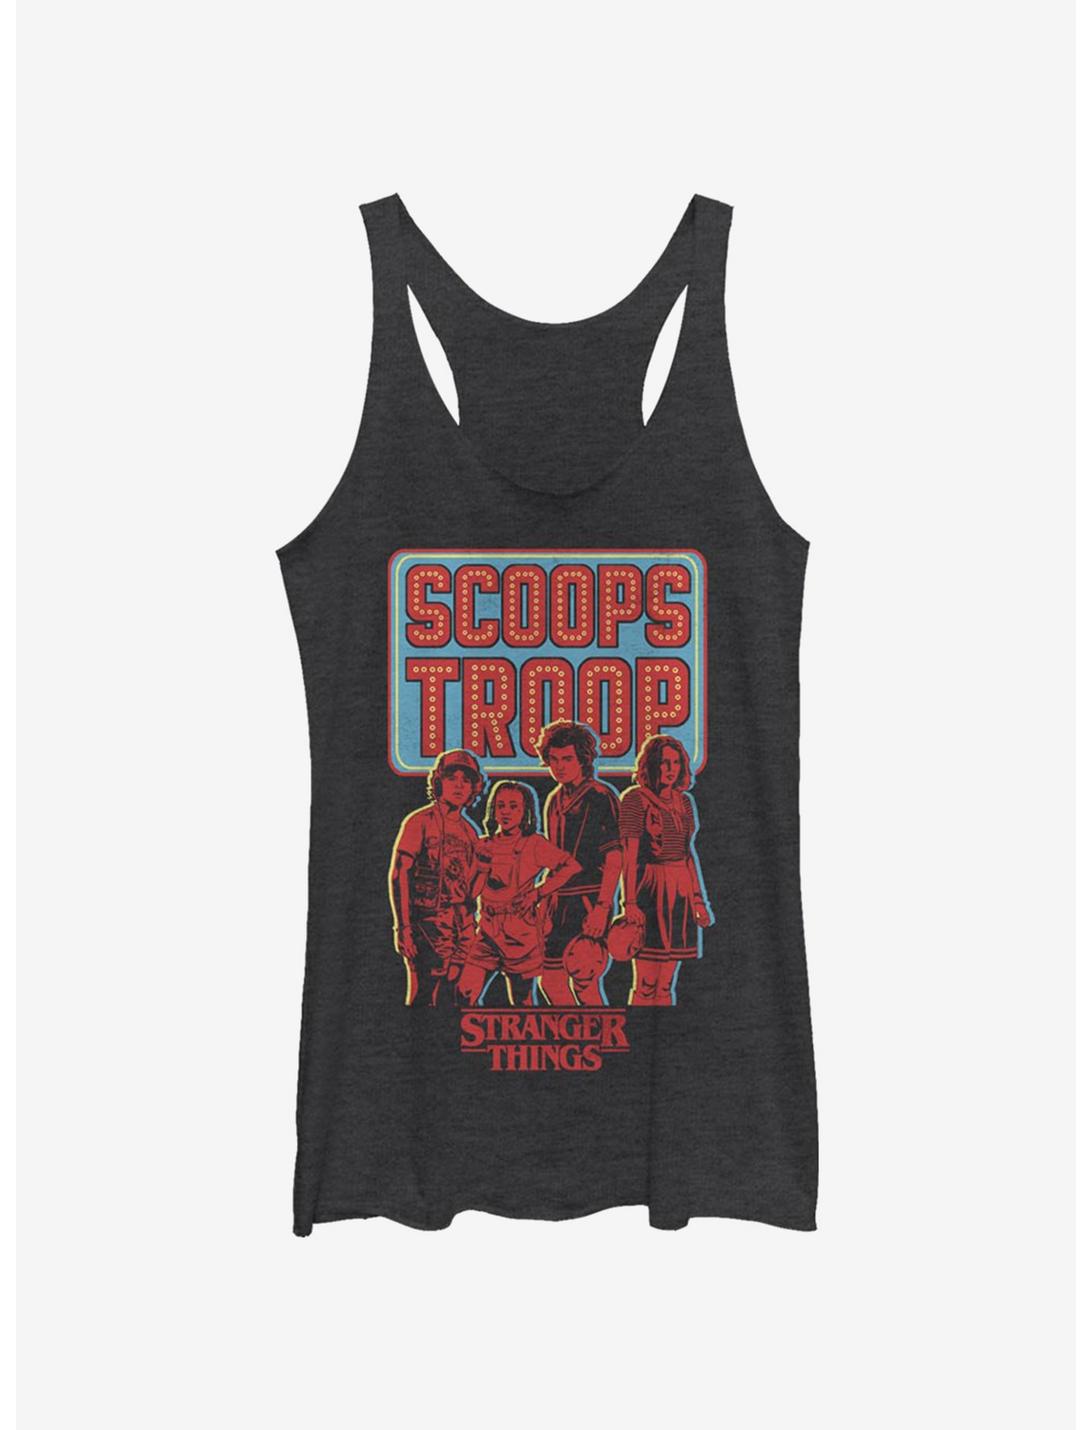 Stranger Things Scoop Troop Womens Tank Top, BLK HTR, hi-res